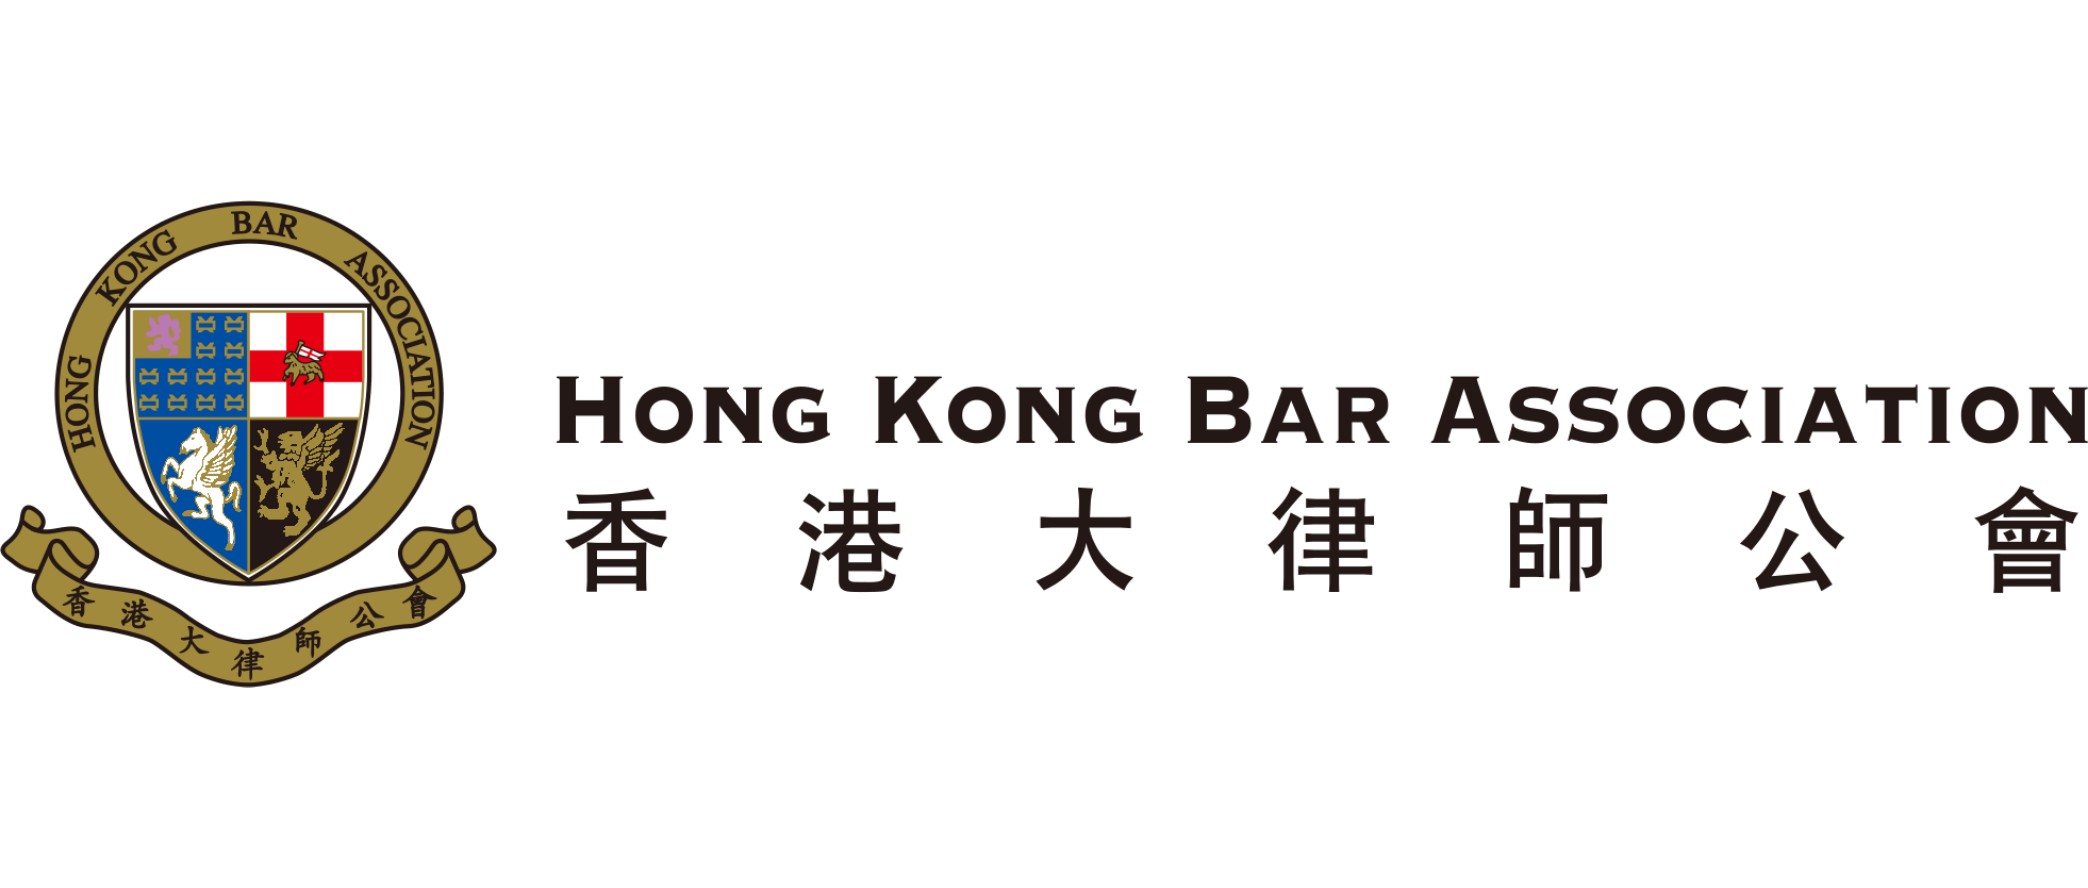 HONG KONG BAR ASSOCIATION